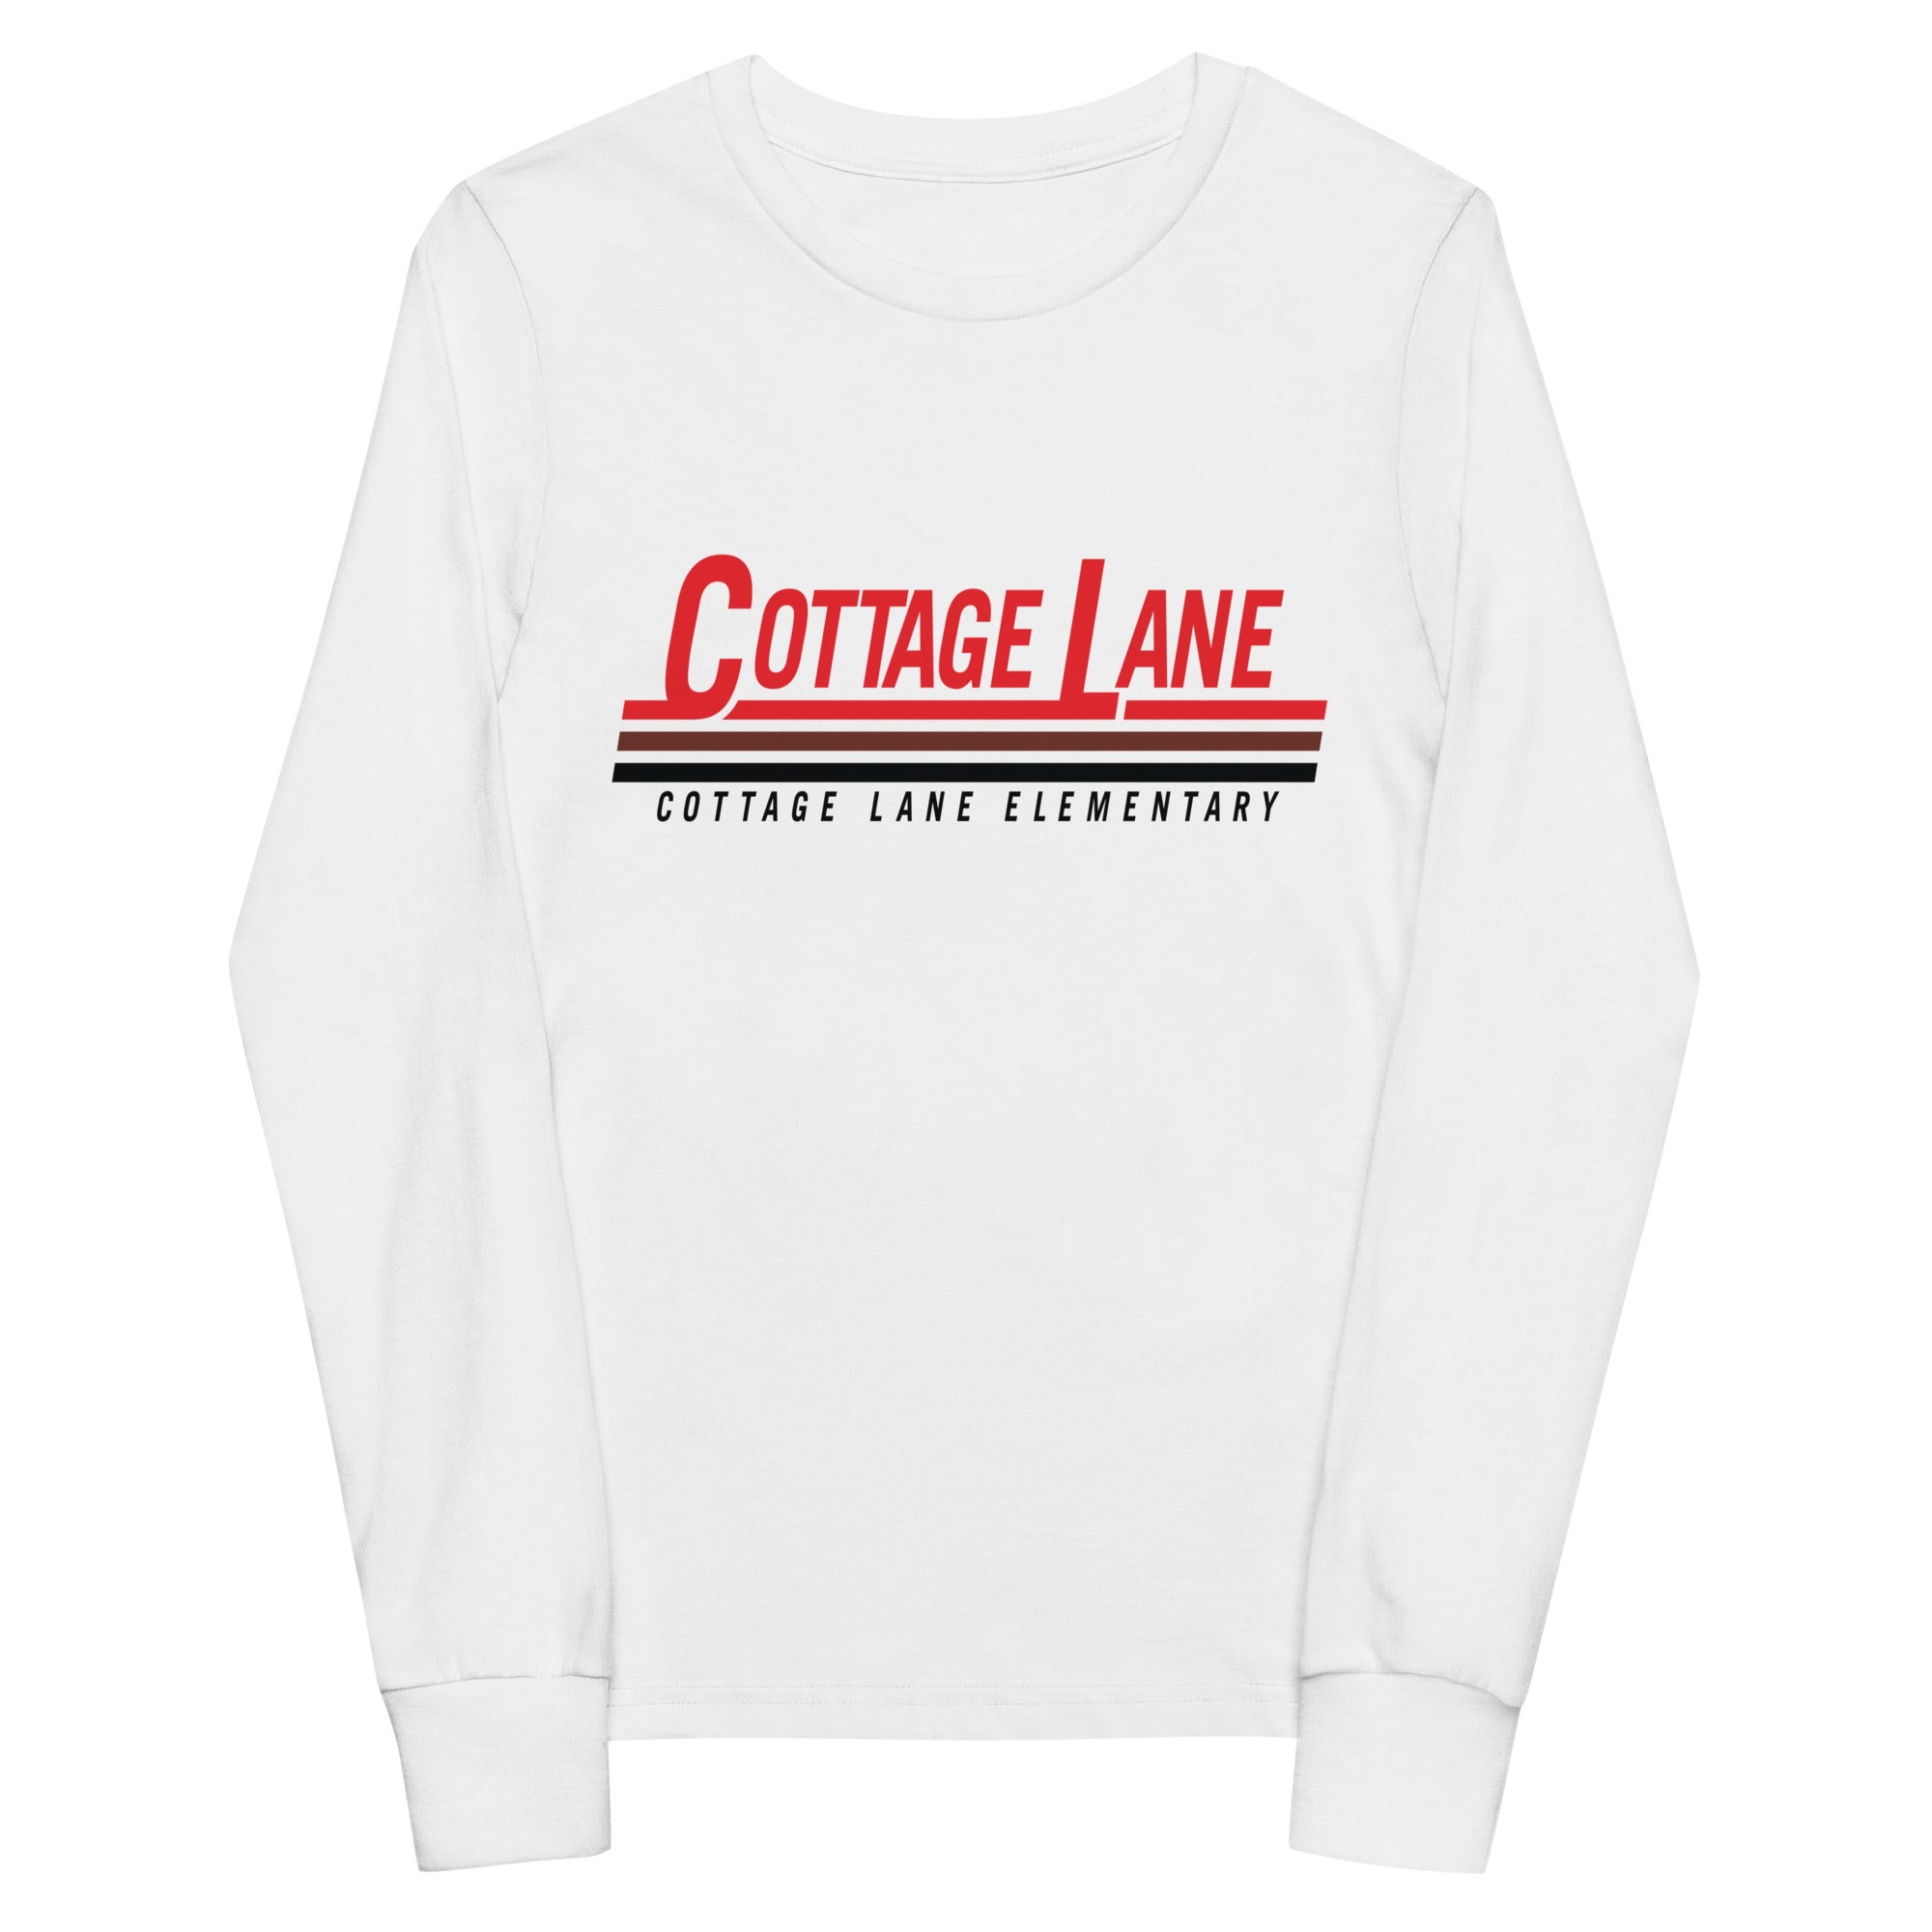 Cottage Lane Elementary Youth long sleeve tee